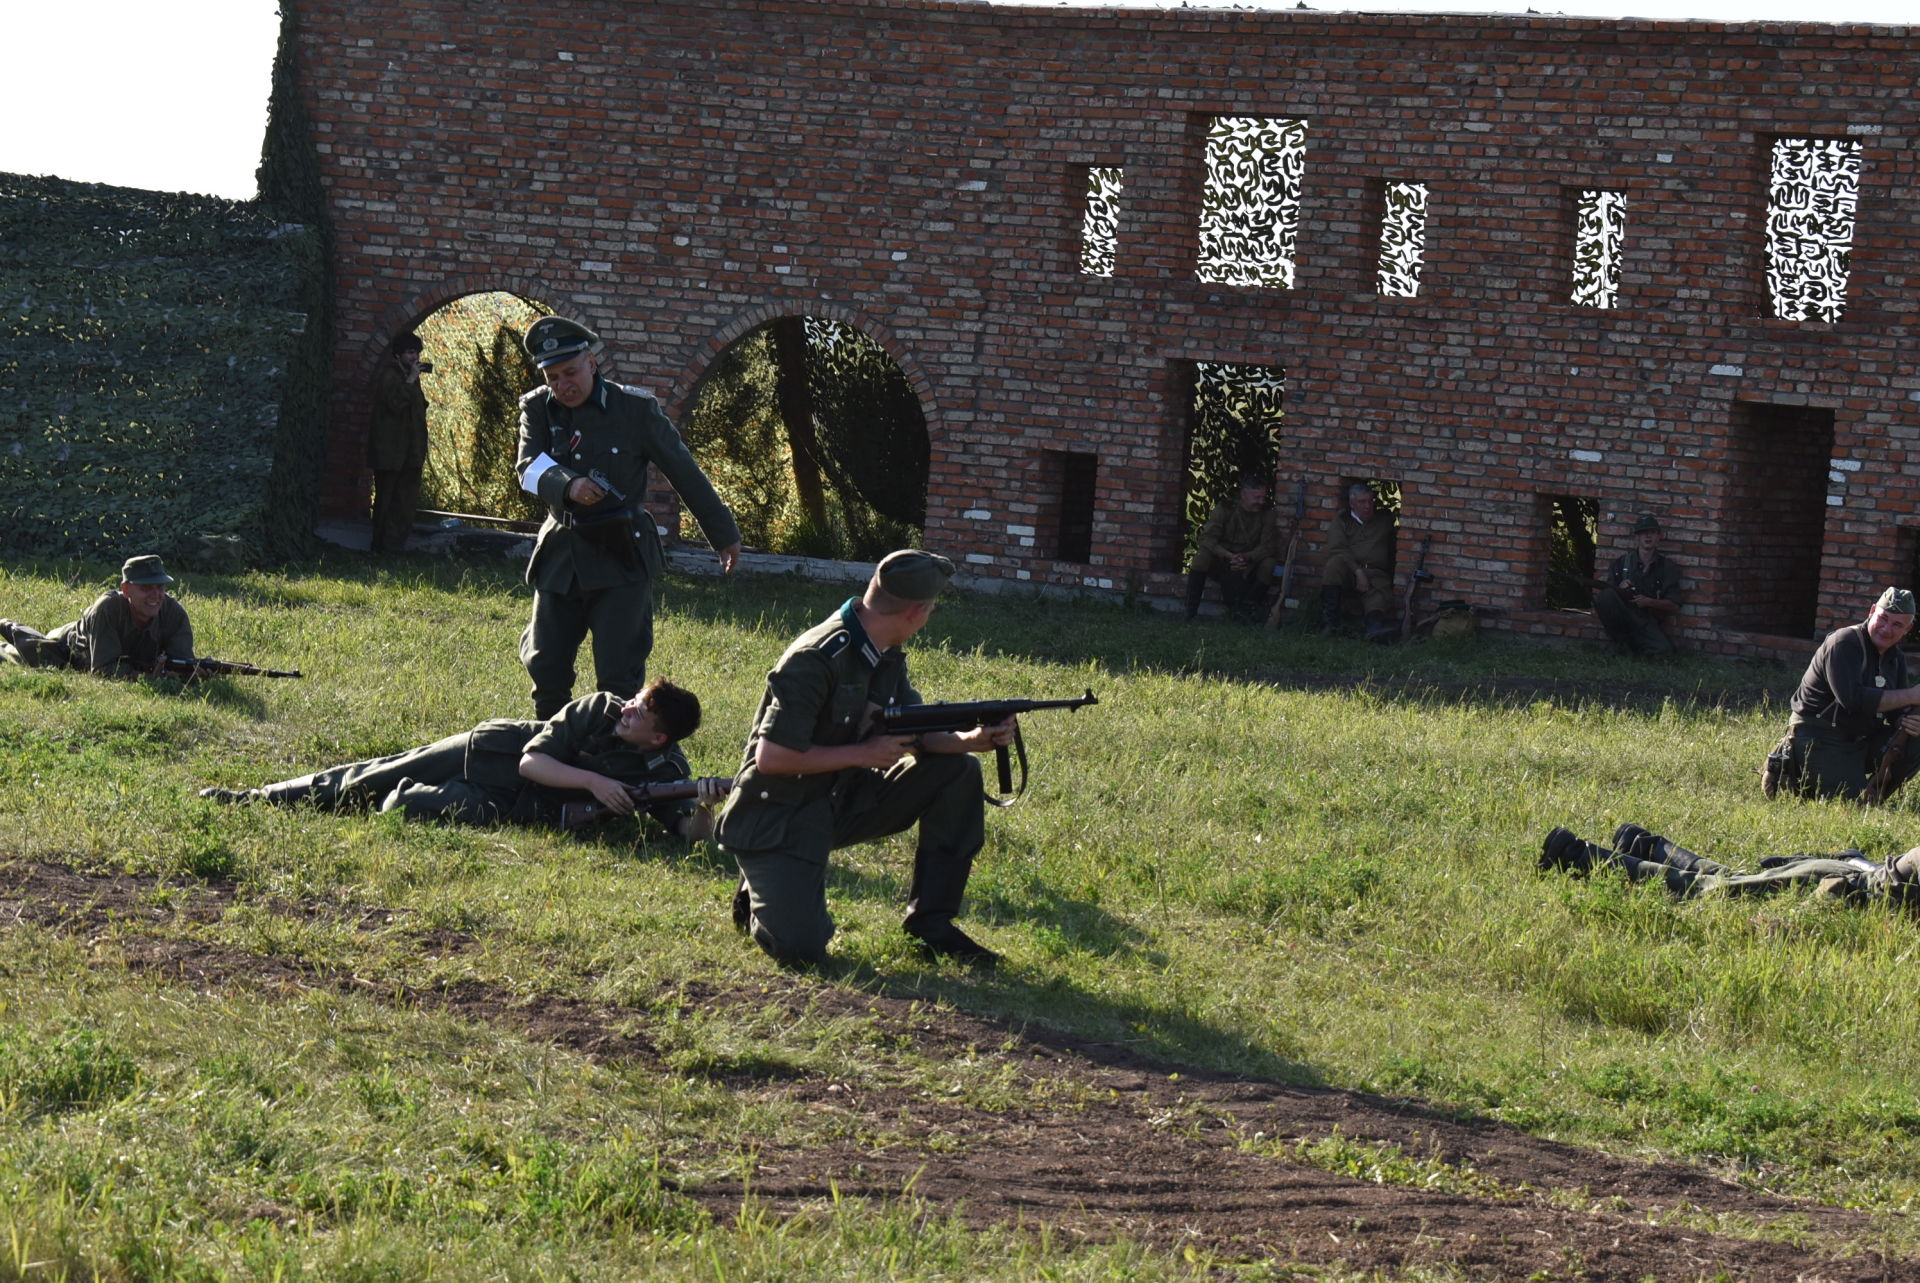 Фото и видеорепортаж: освобождение Брестской крепости в рамках фестиваля «Эльбэдэн»